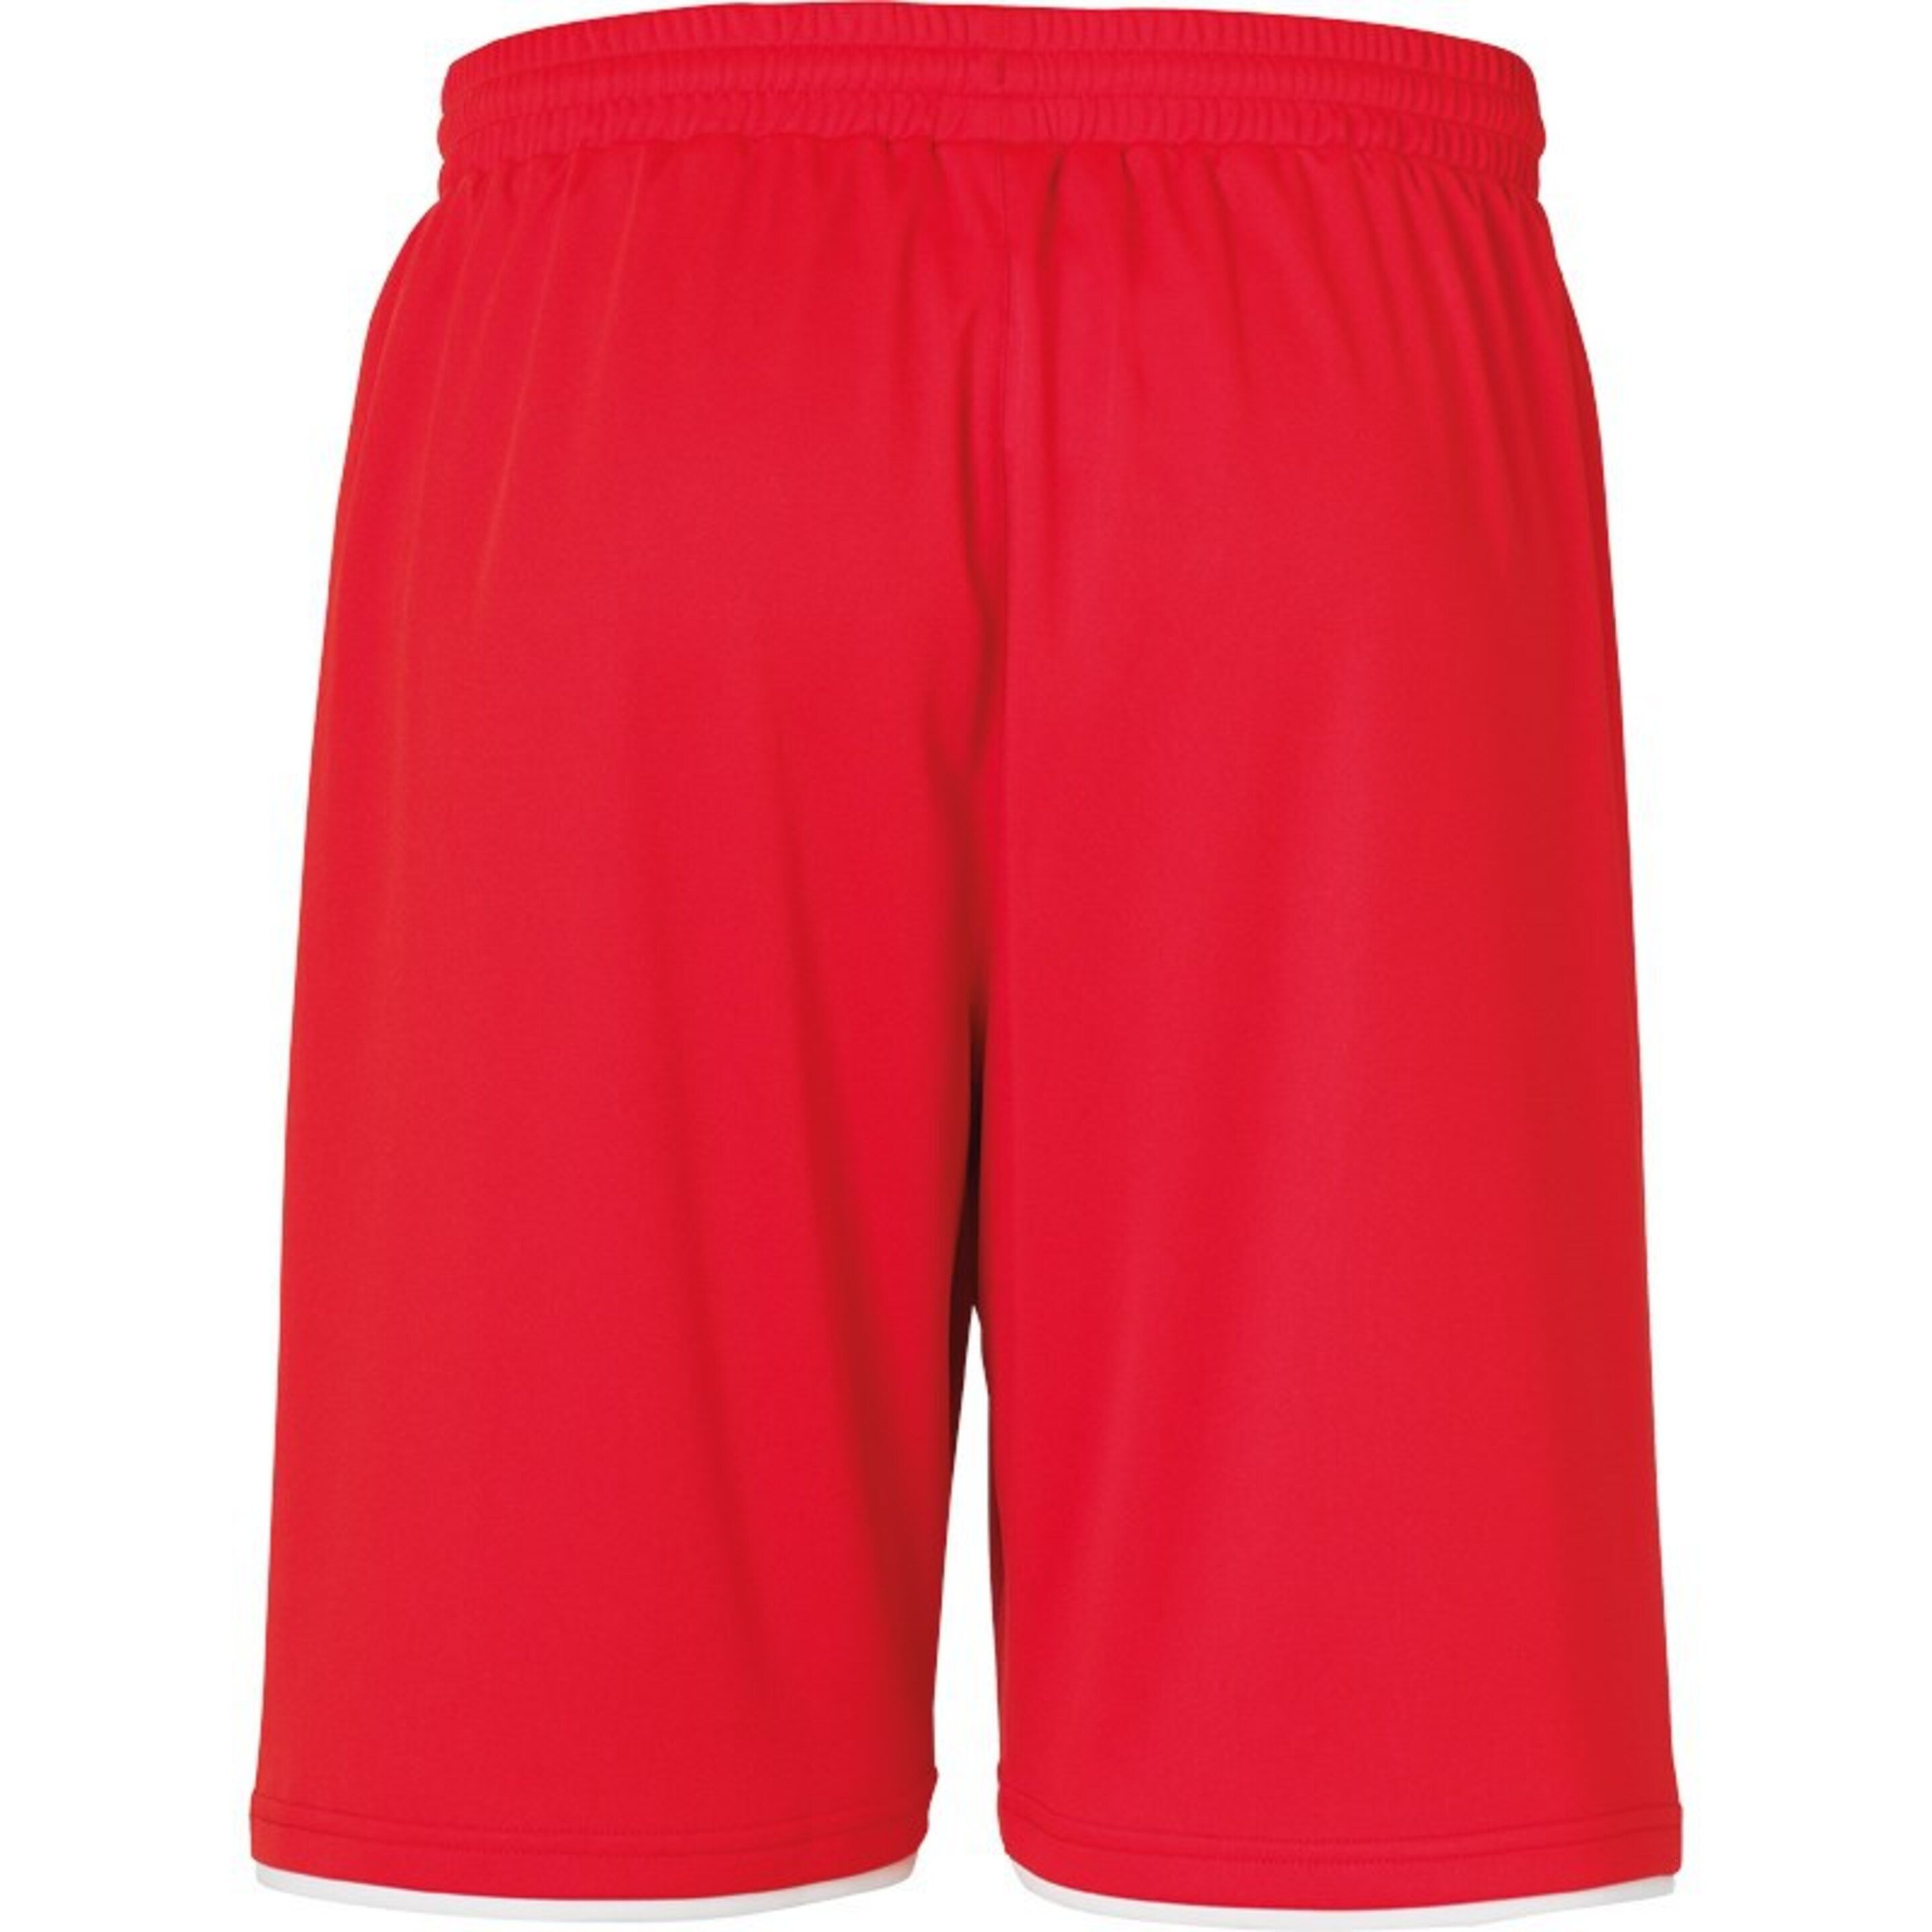 Club Shorts Rojo/blanco Uhlsport